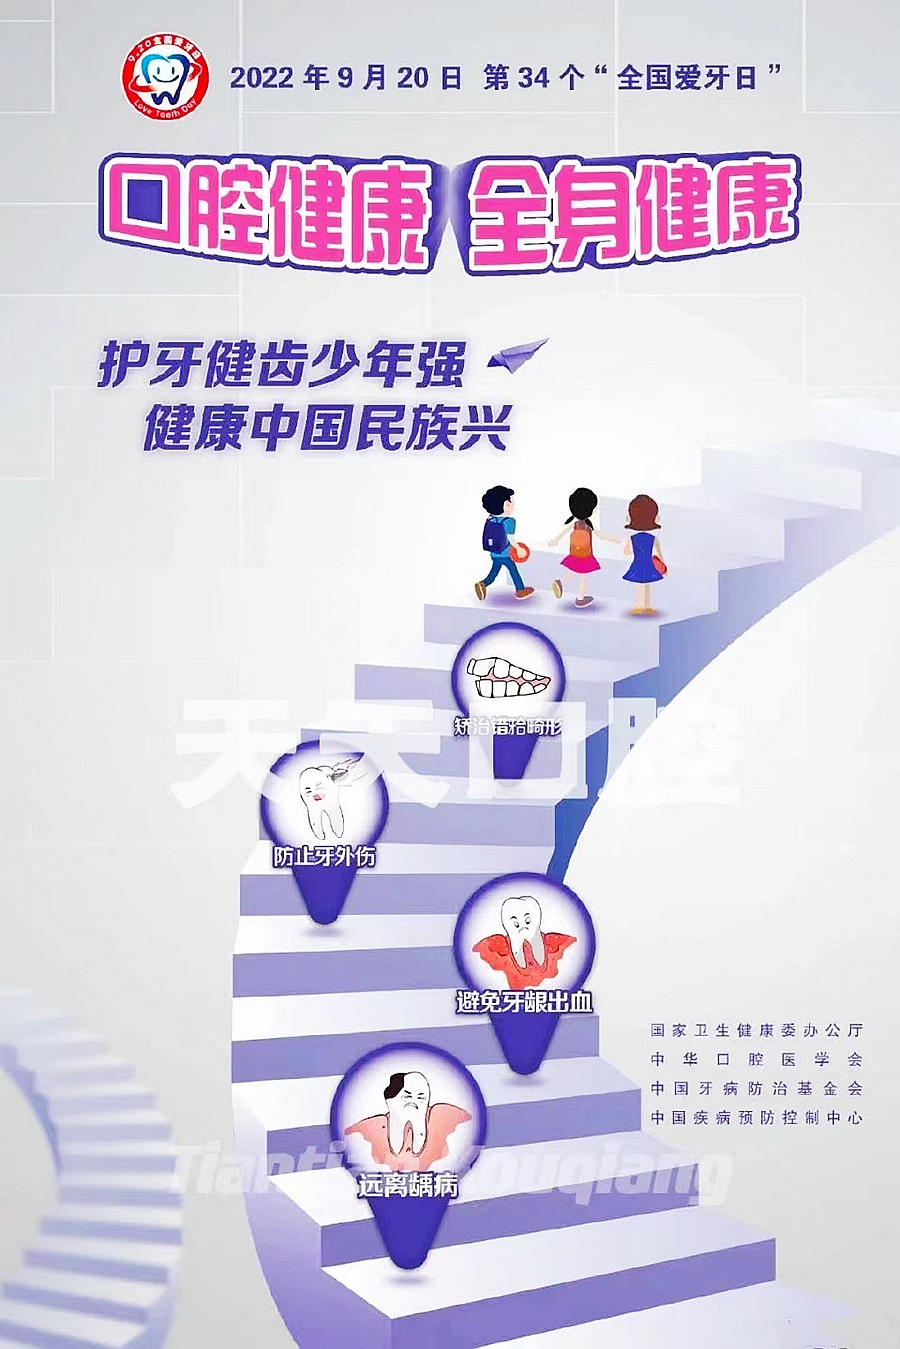 9月20日第34个爱牙日 口腔健康 全身健康，护牙健齿少年强 健康中国民族兴。